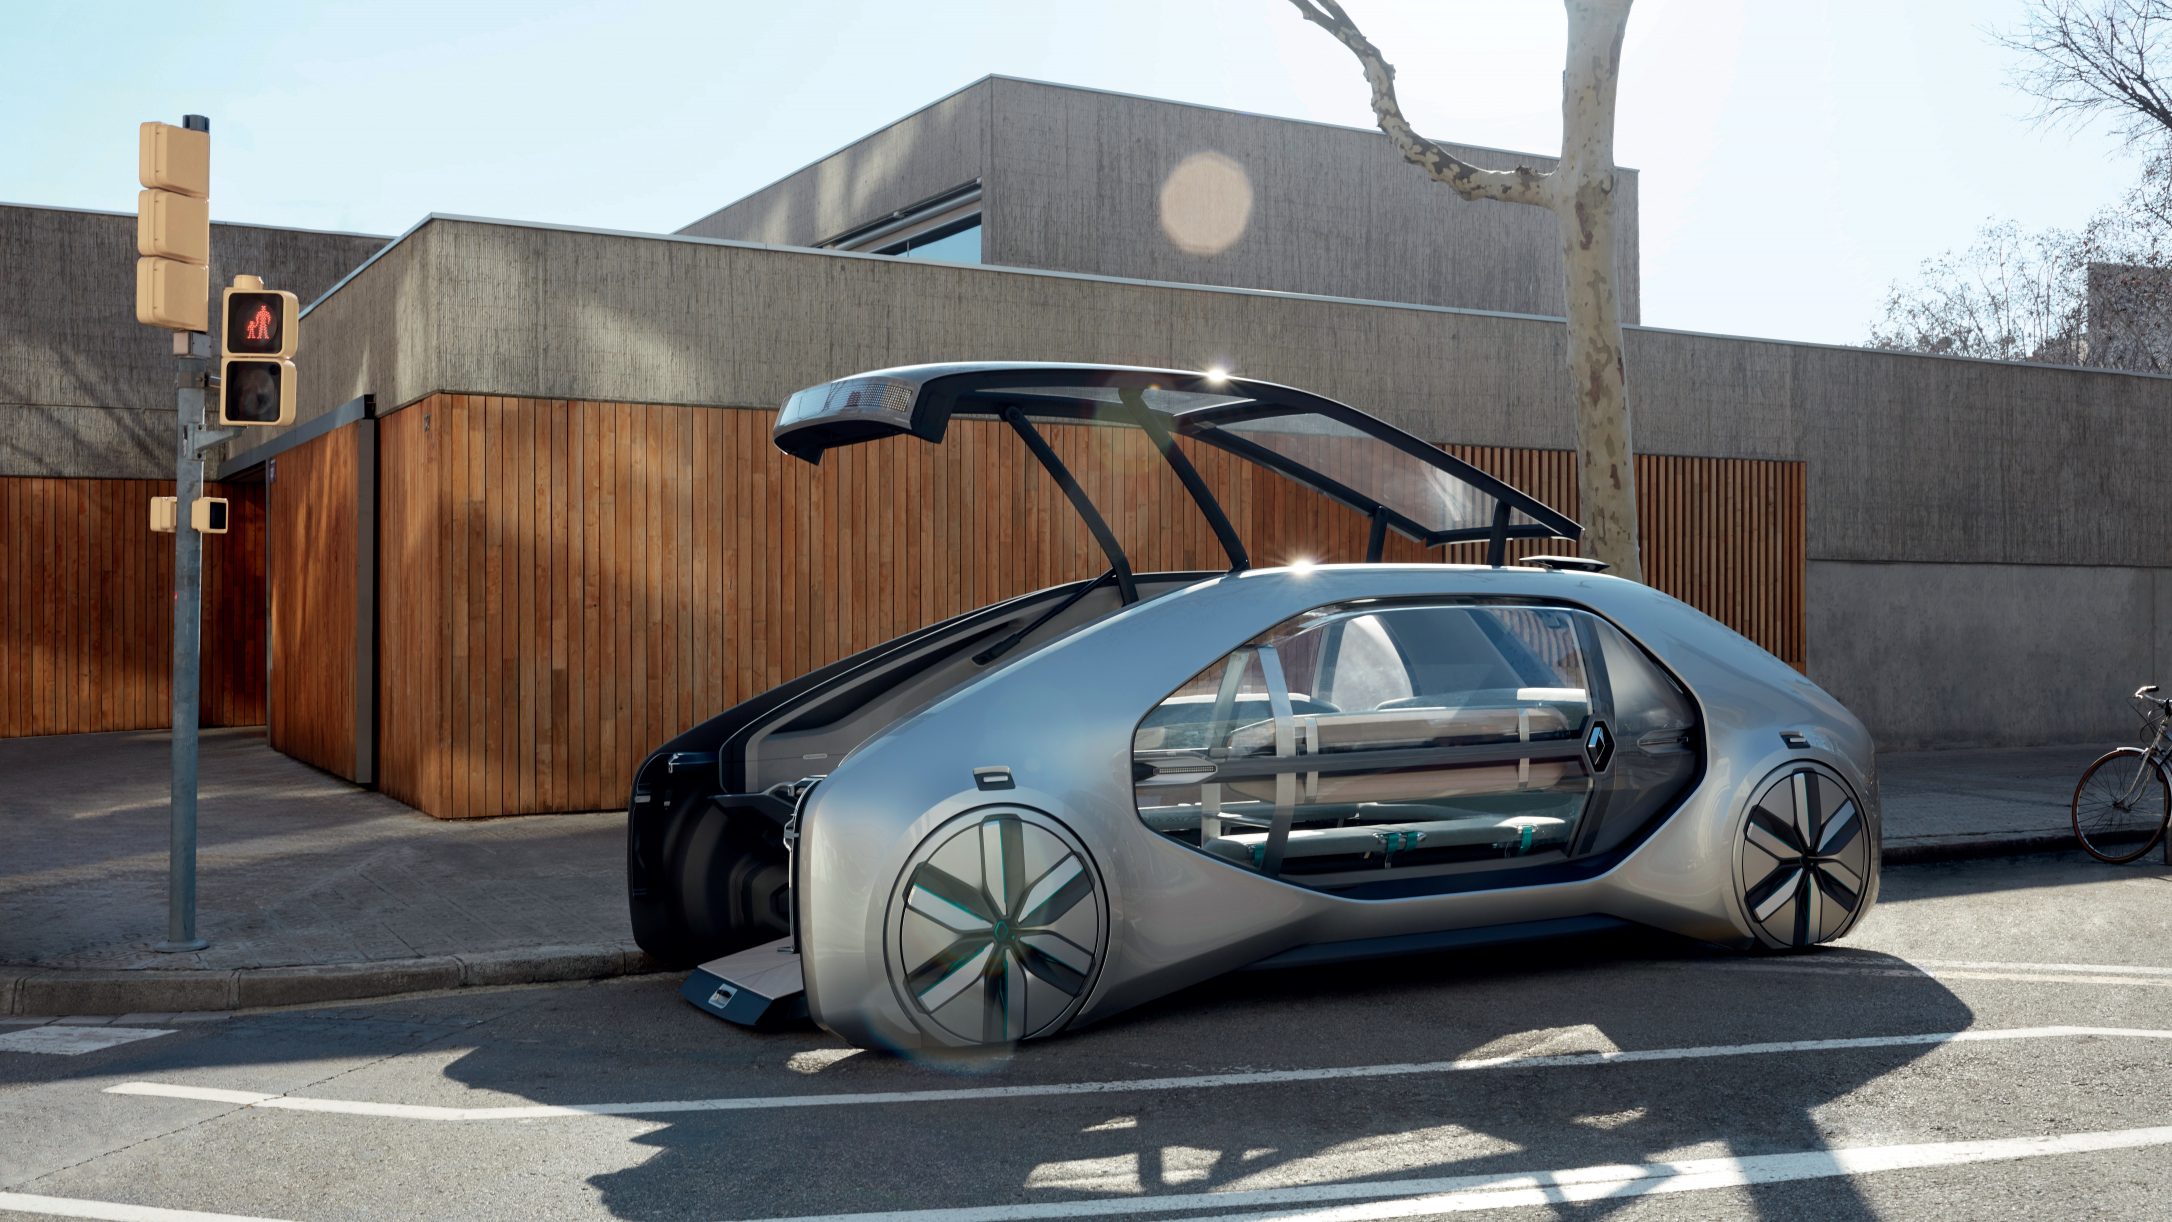 Renault unveils EZGO, a level 4 autonomous ridesharing electric city